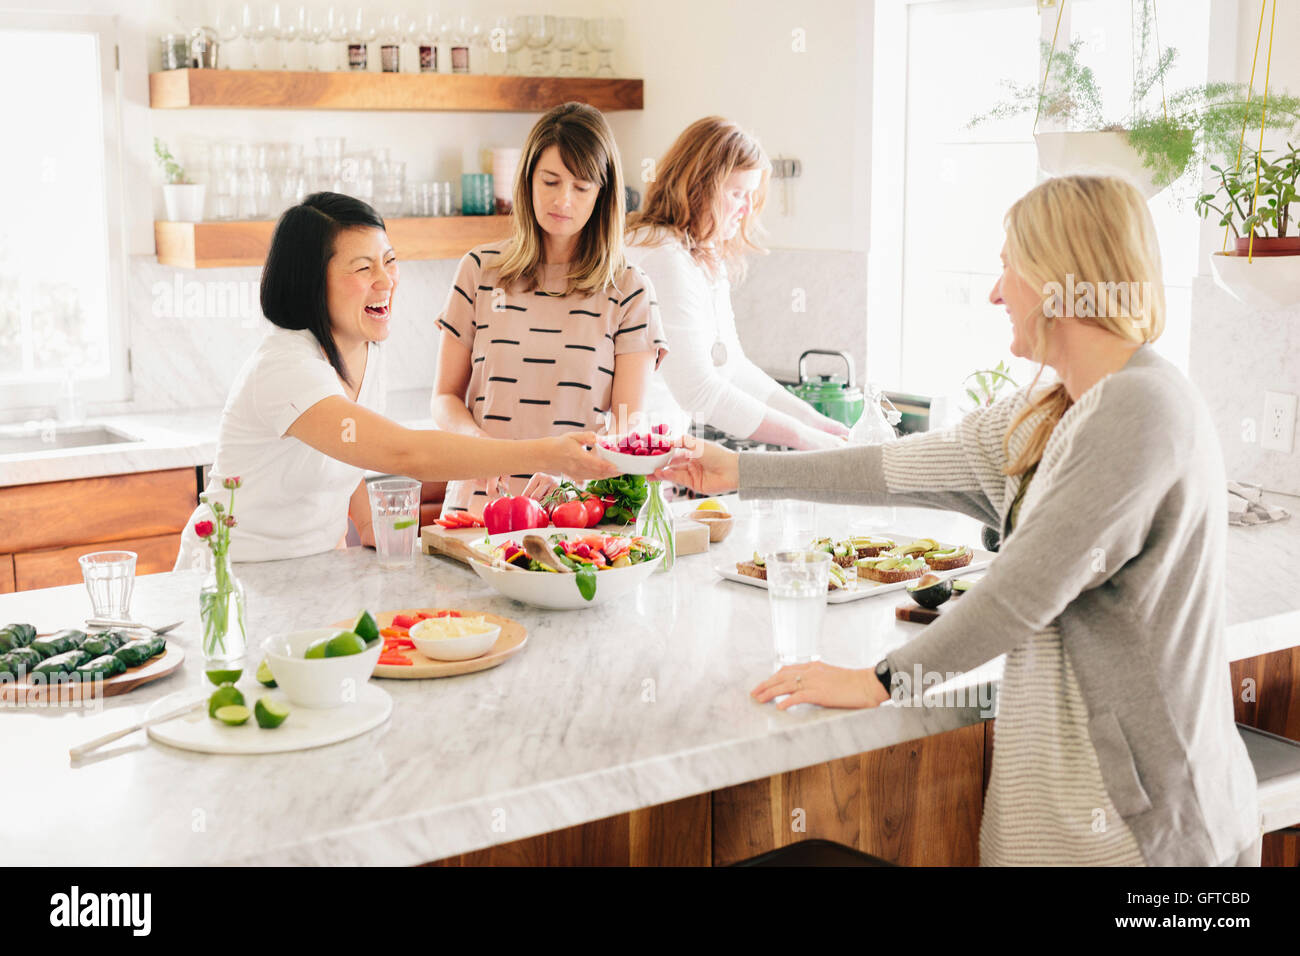 Quatre femmes dans une cuisine préparer le déjeuner Banque D'Images